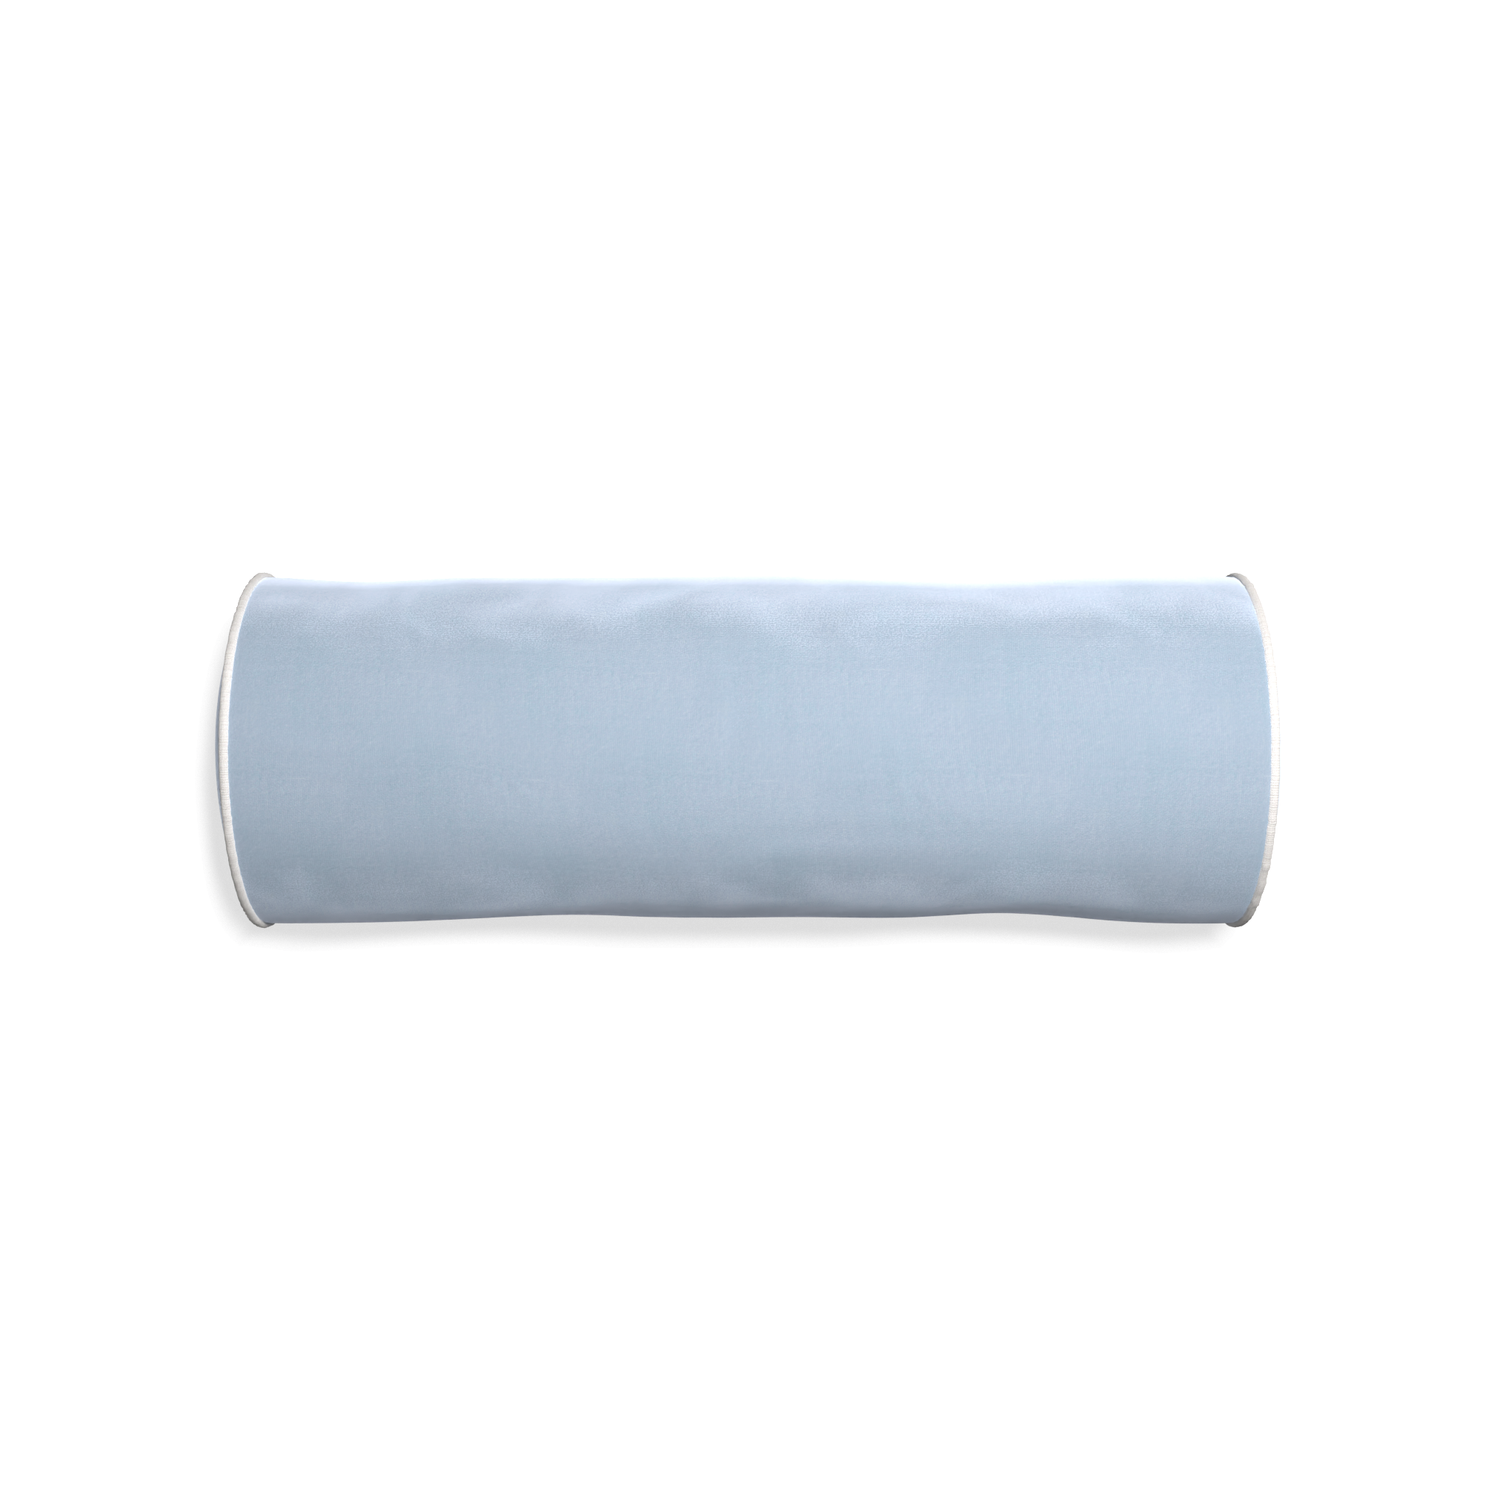 bolster light blue velvet pillow with white piping 